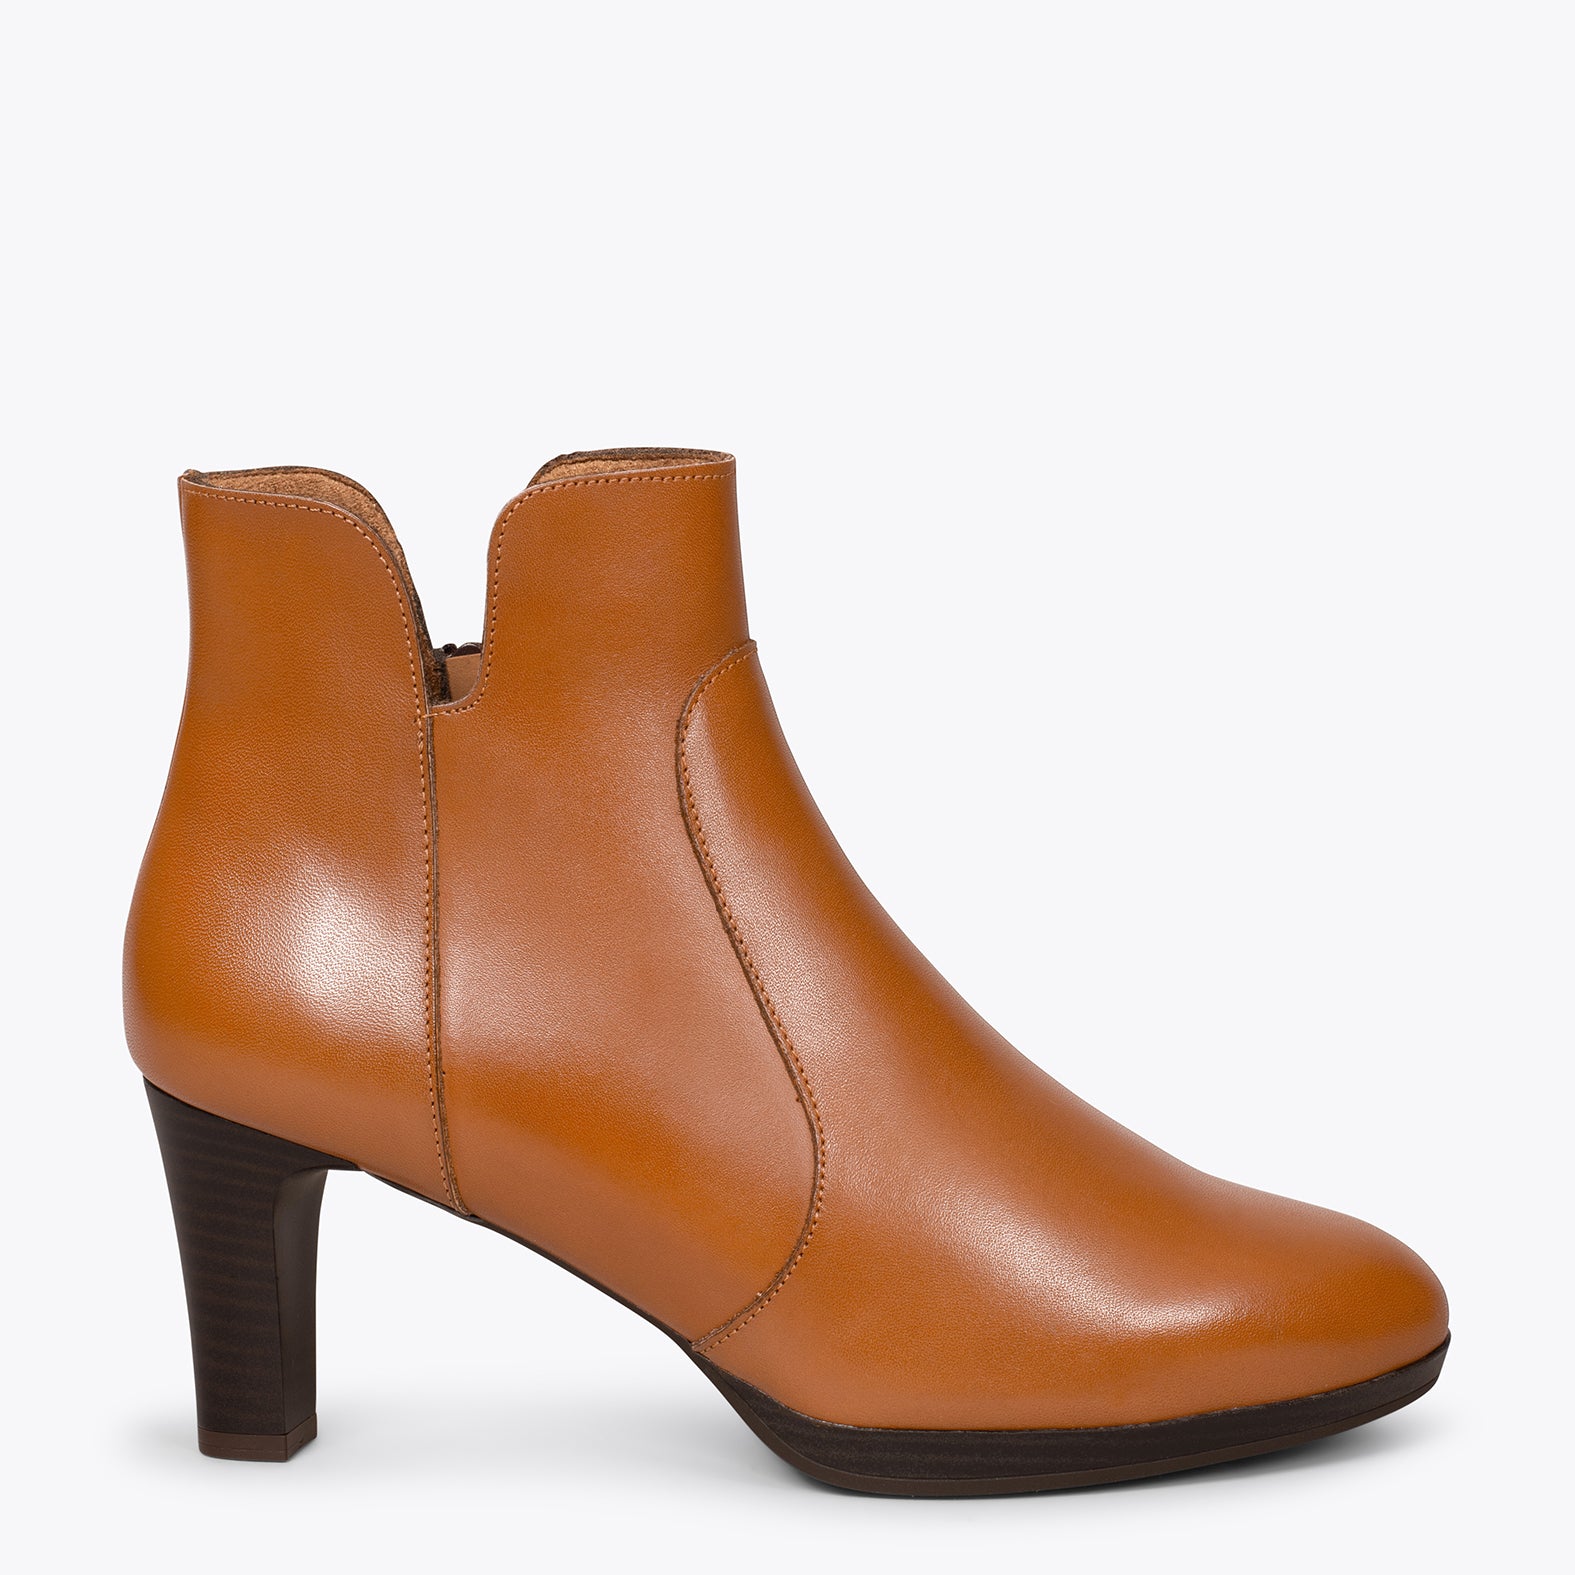 ROME - CAMEL high heel elegant booties